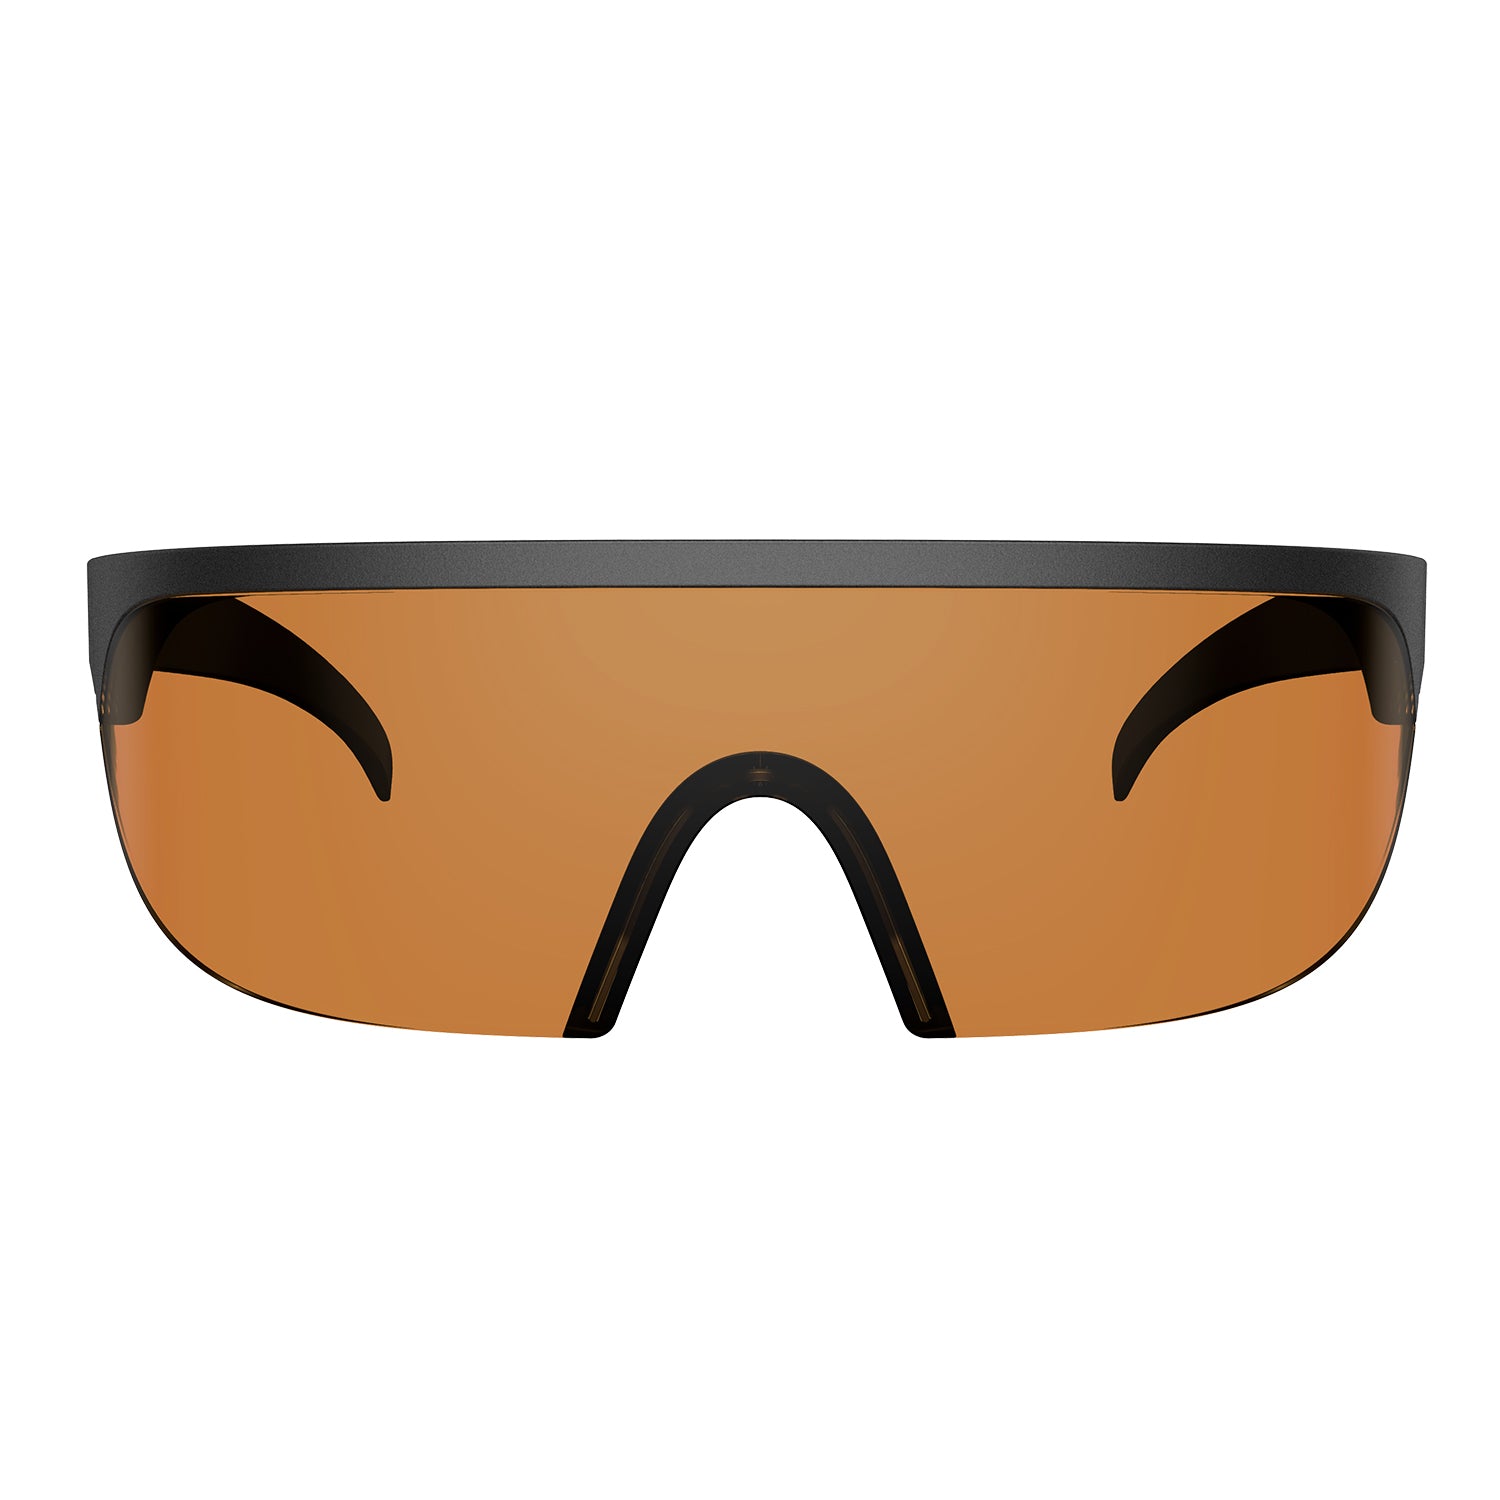 Gafas protectoras LaserPecker / Gafas de seguridad para LaserPecker 1,Pro,2,3